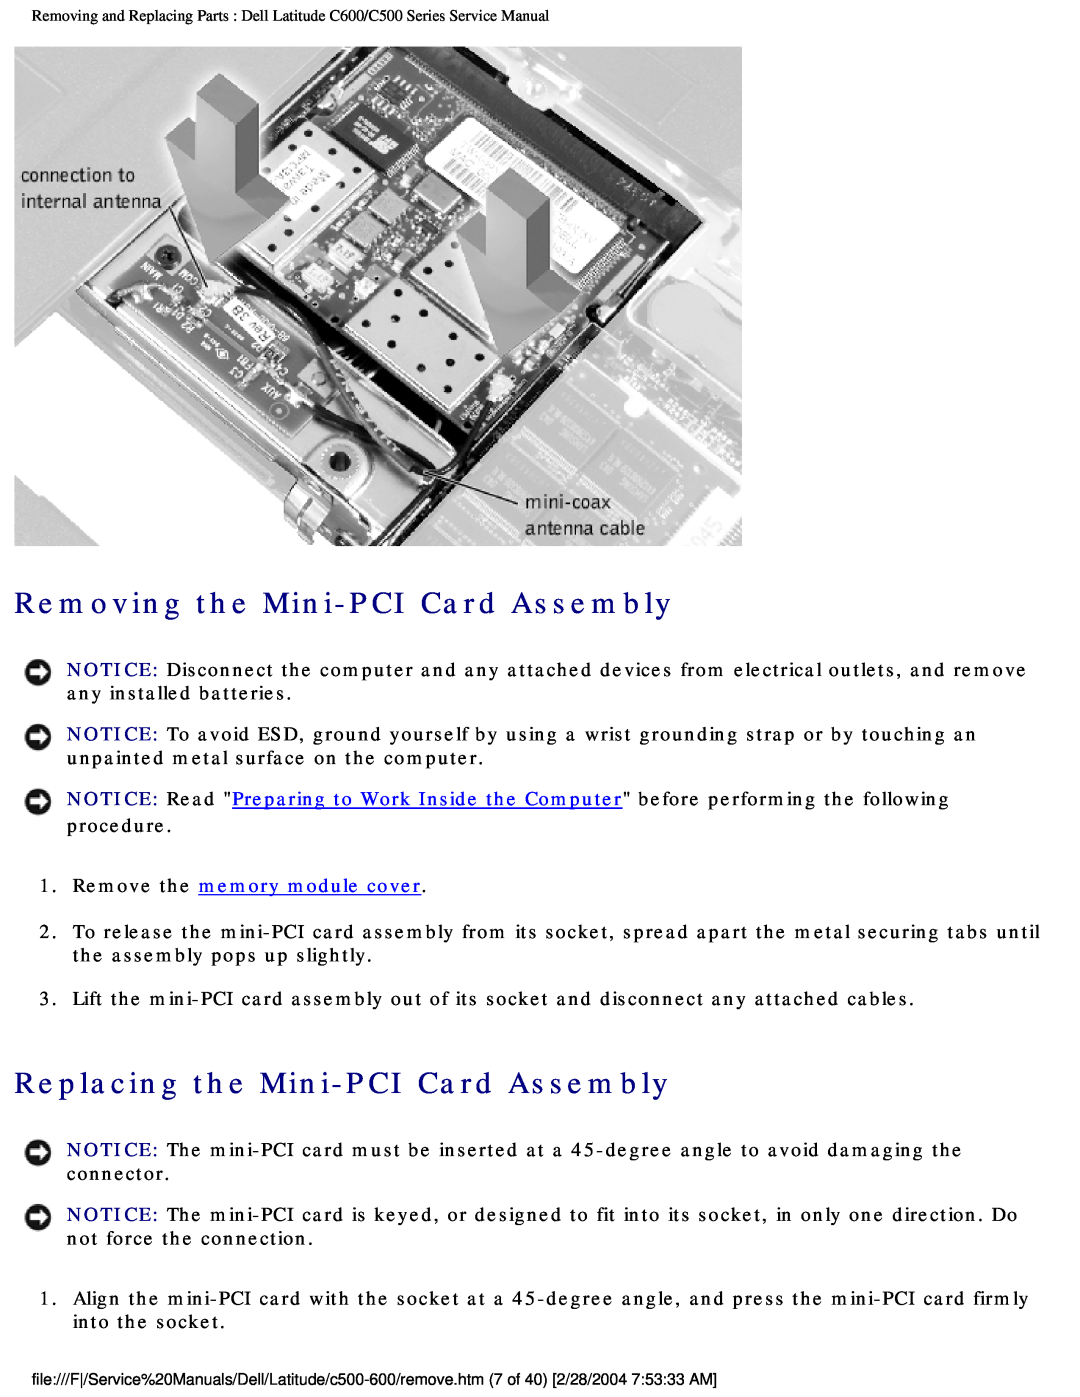 Dell C500 manual Removing the Mini-PCI Card Assembly, Replacing the Mini-PCI Card Assembly, Remove the memory module cover 